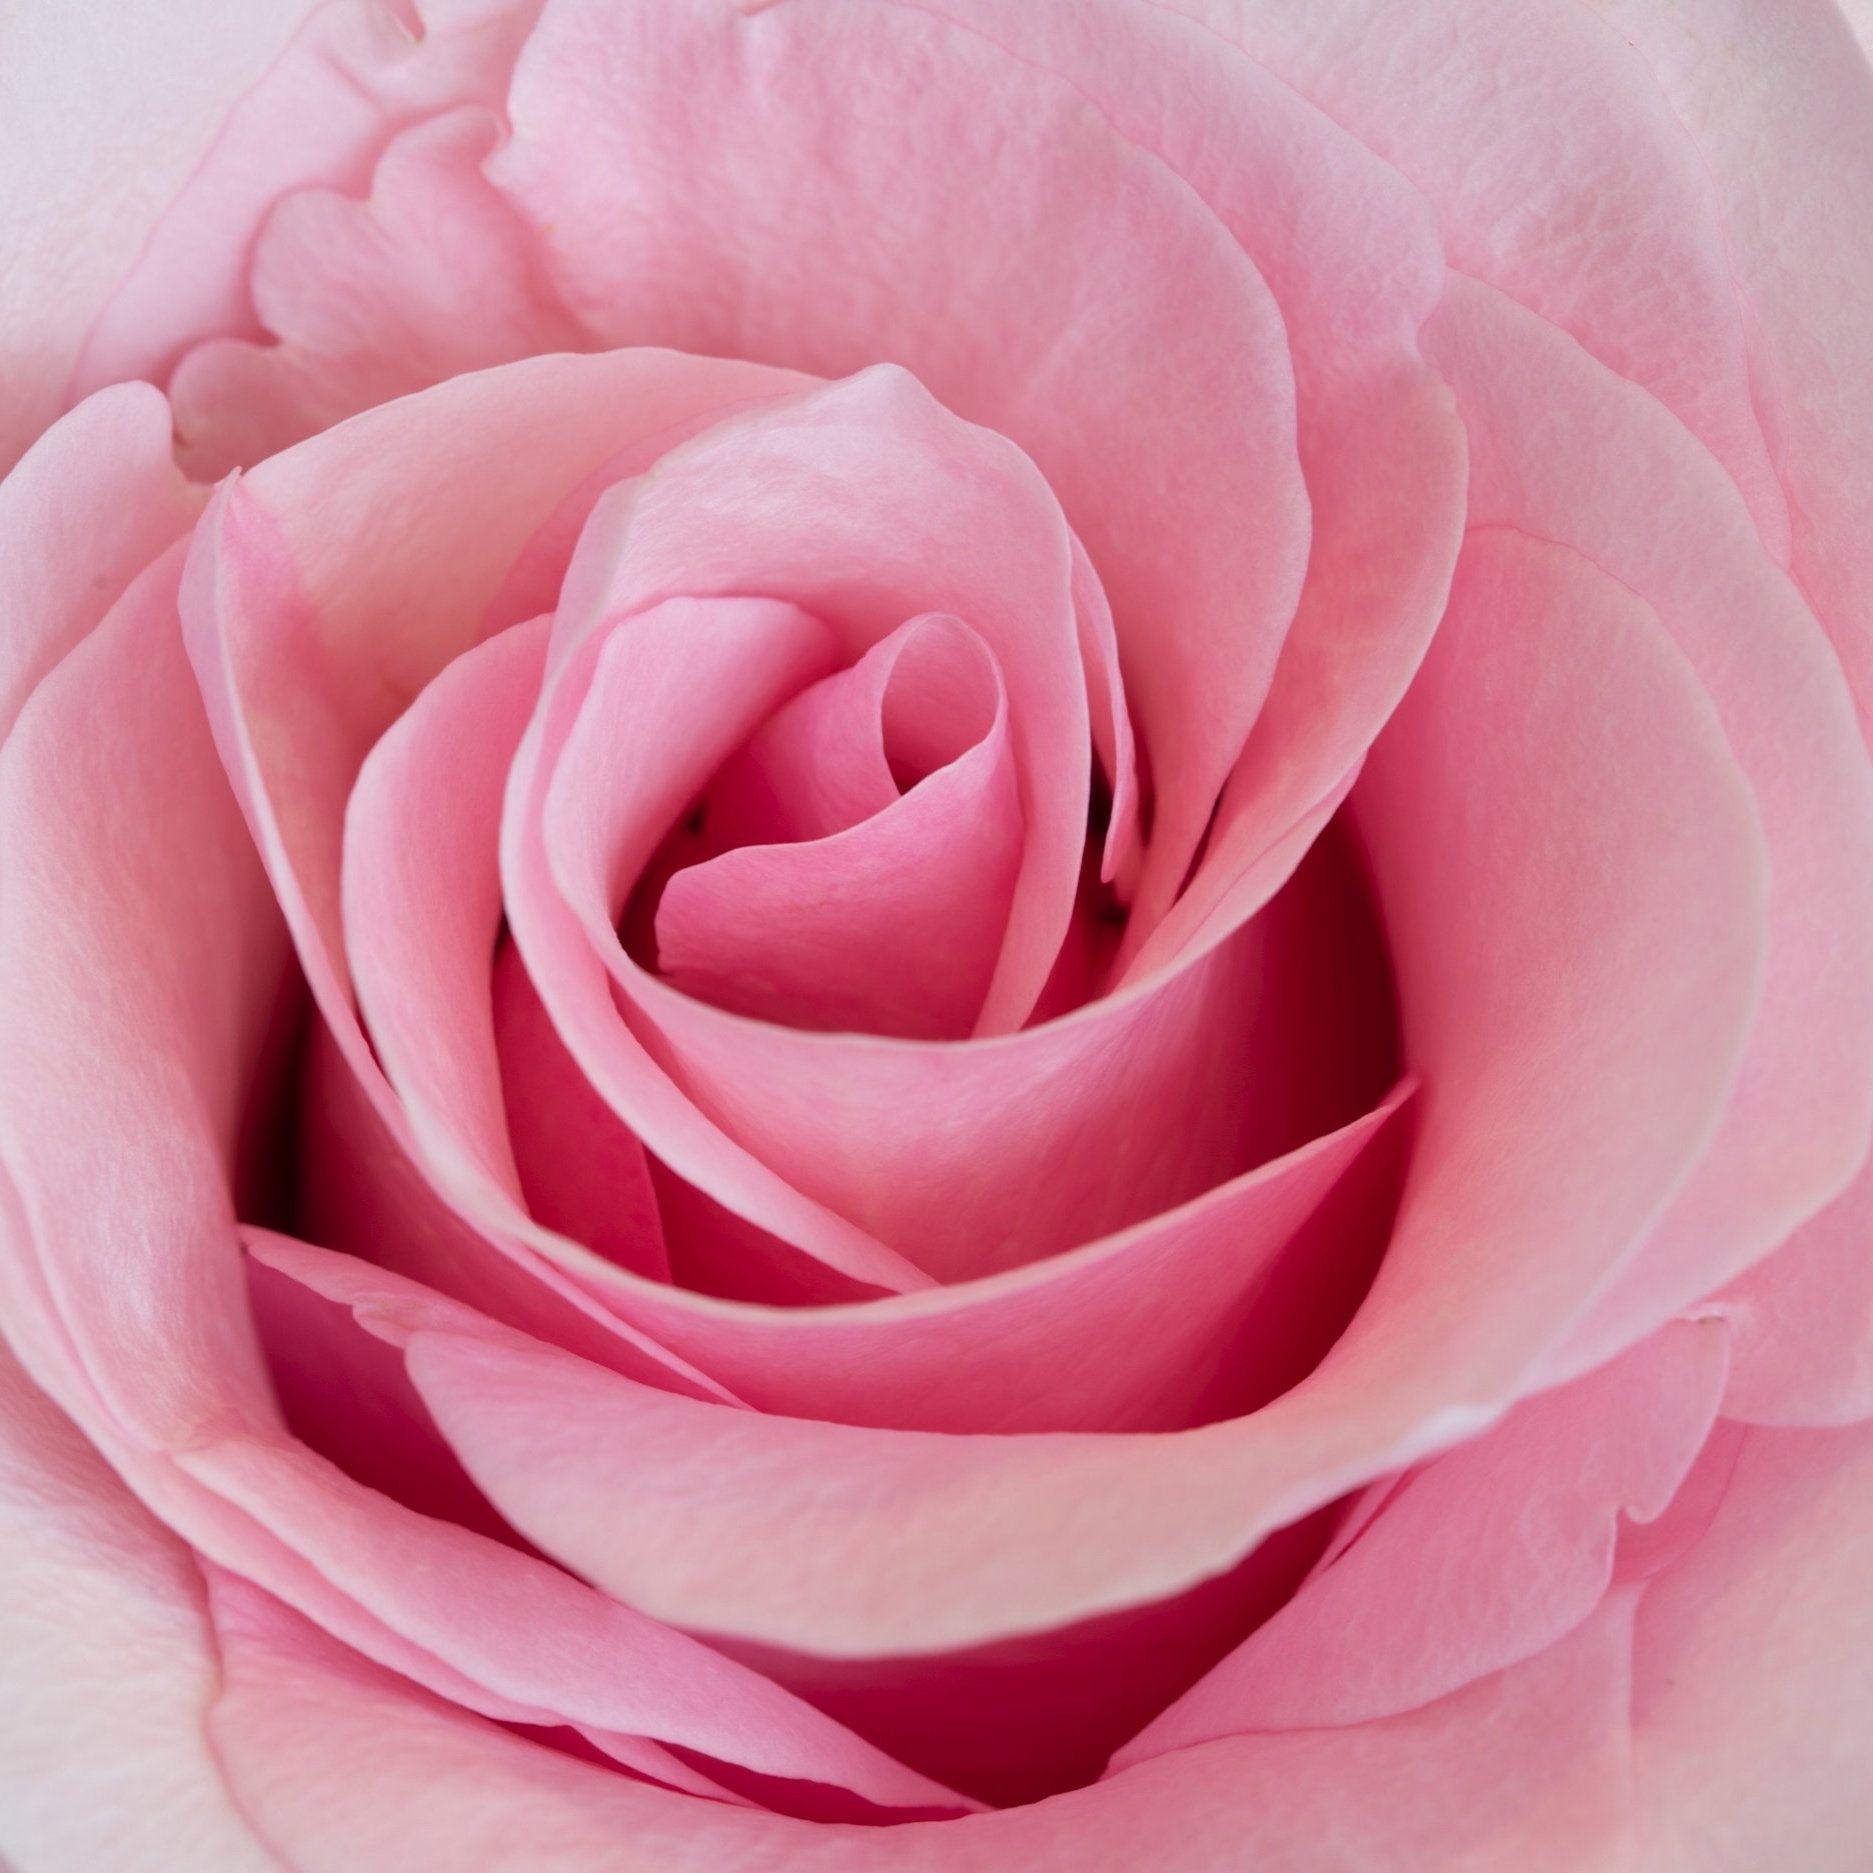 Pink Rose 3